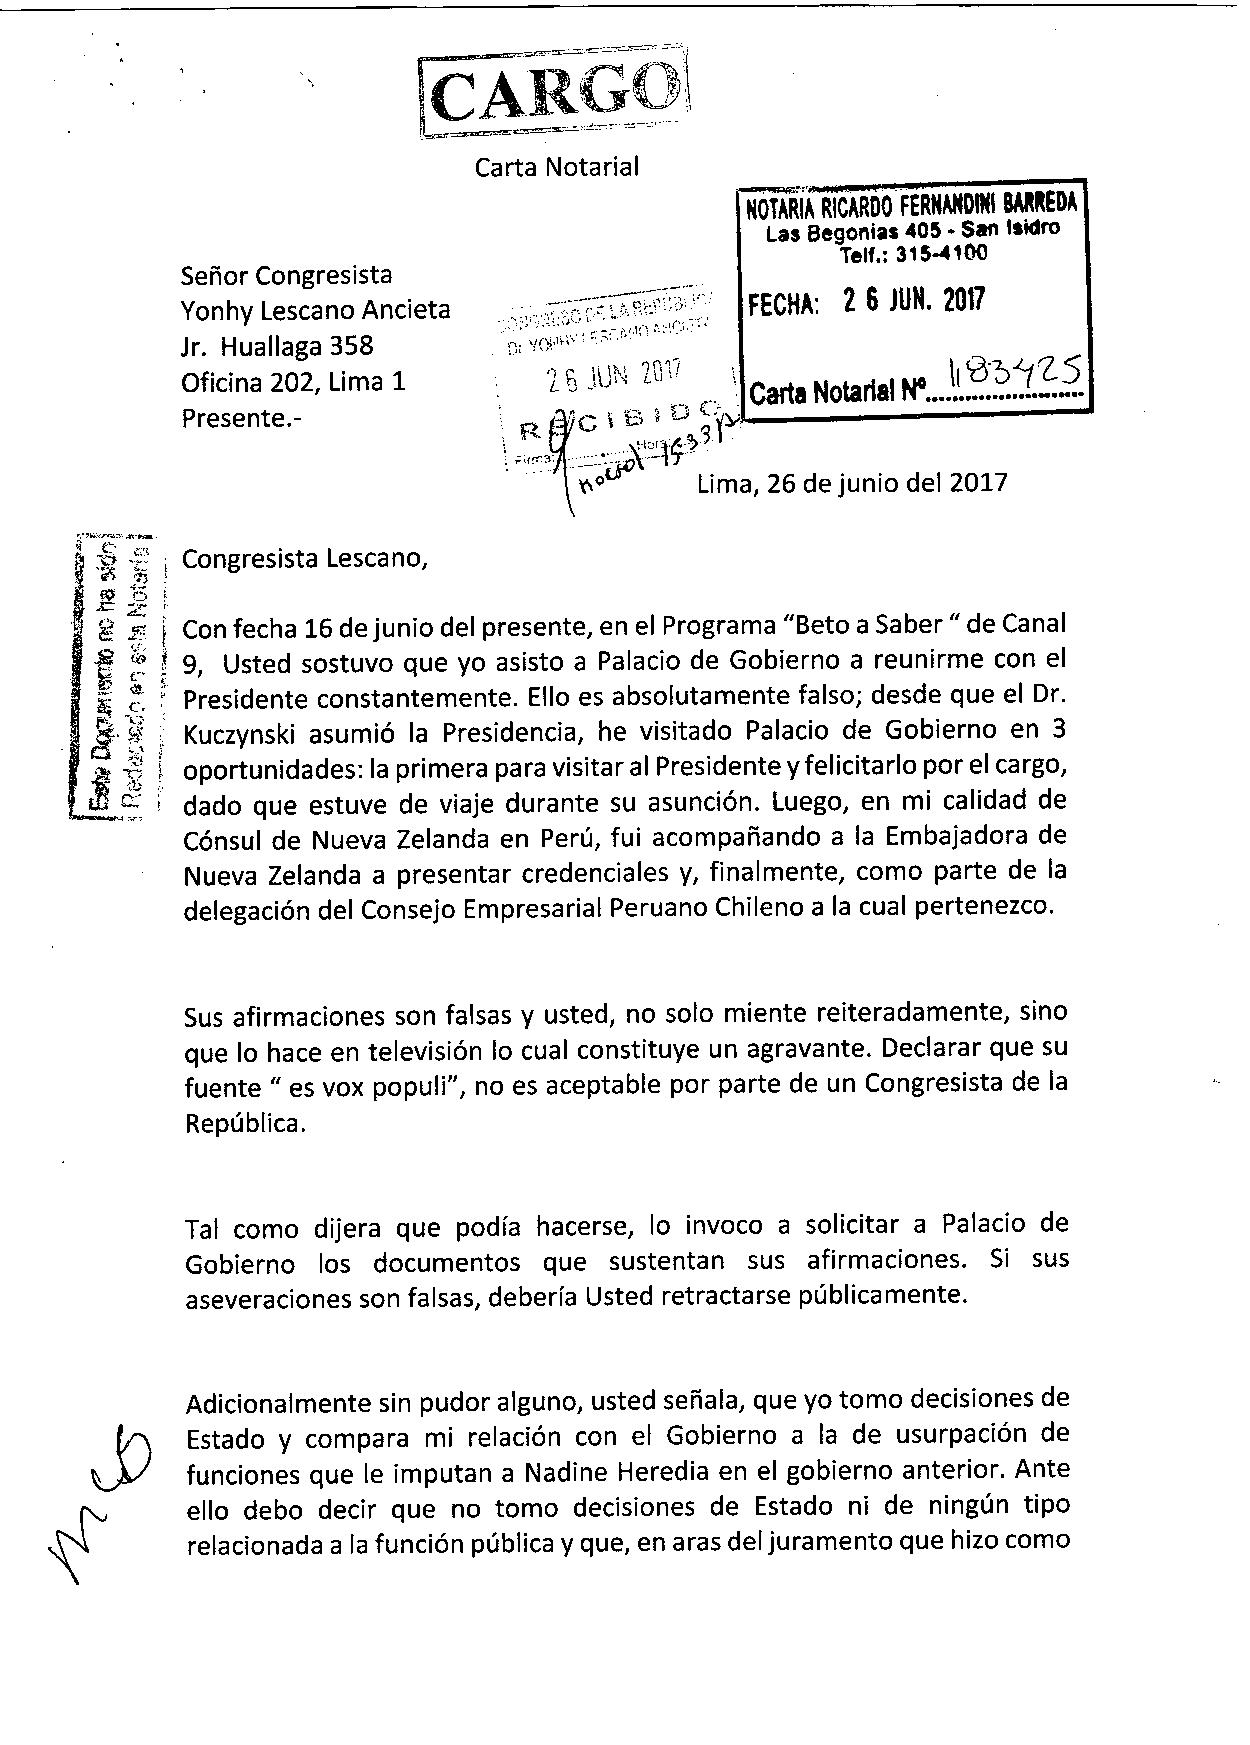 Carta Notarial a Congresista Yonhy Lescano